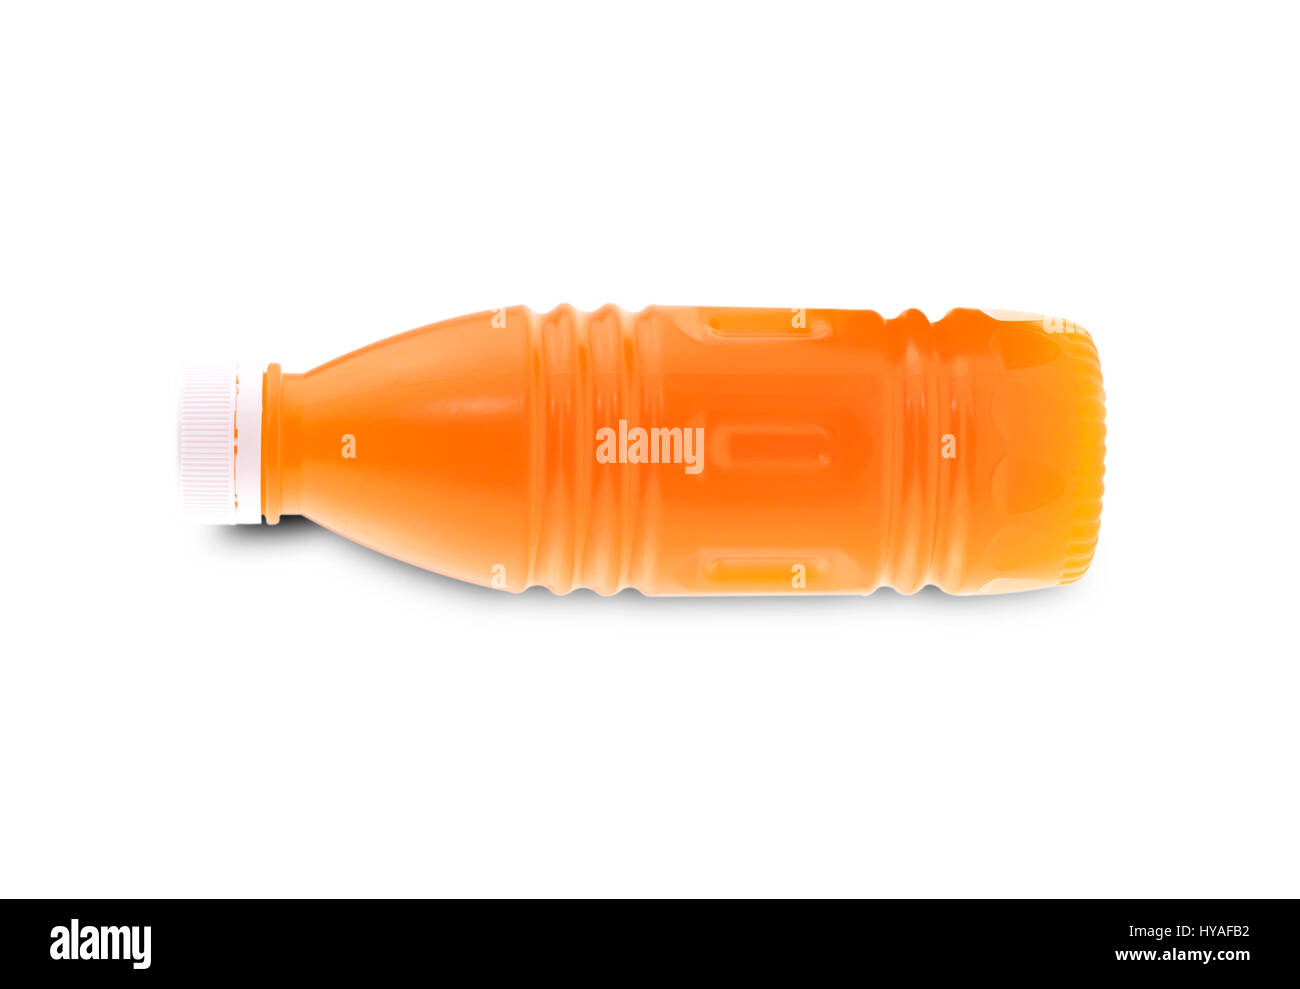 Orange juice in plastic bottle isolated on white background. Stock Photo